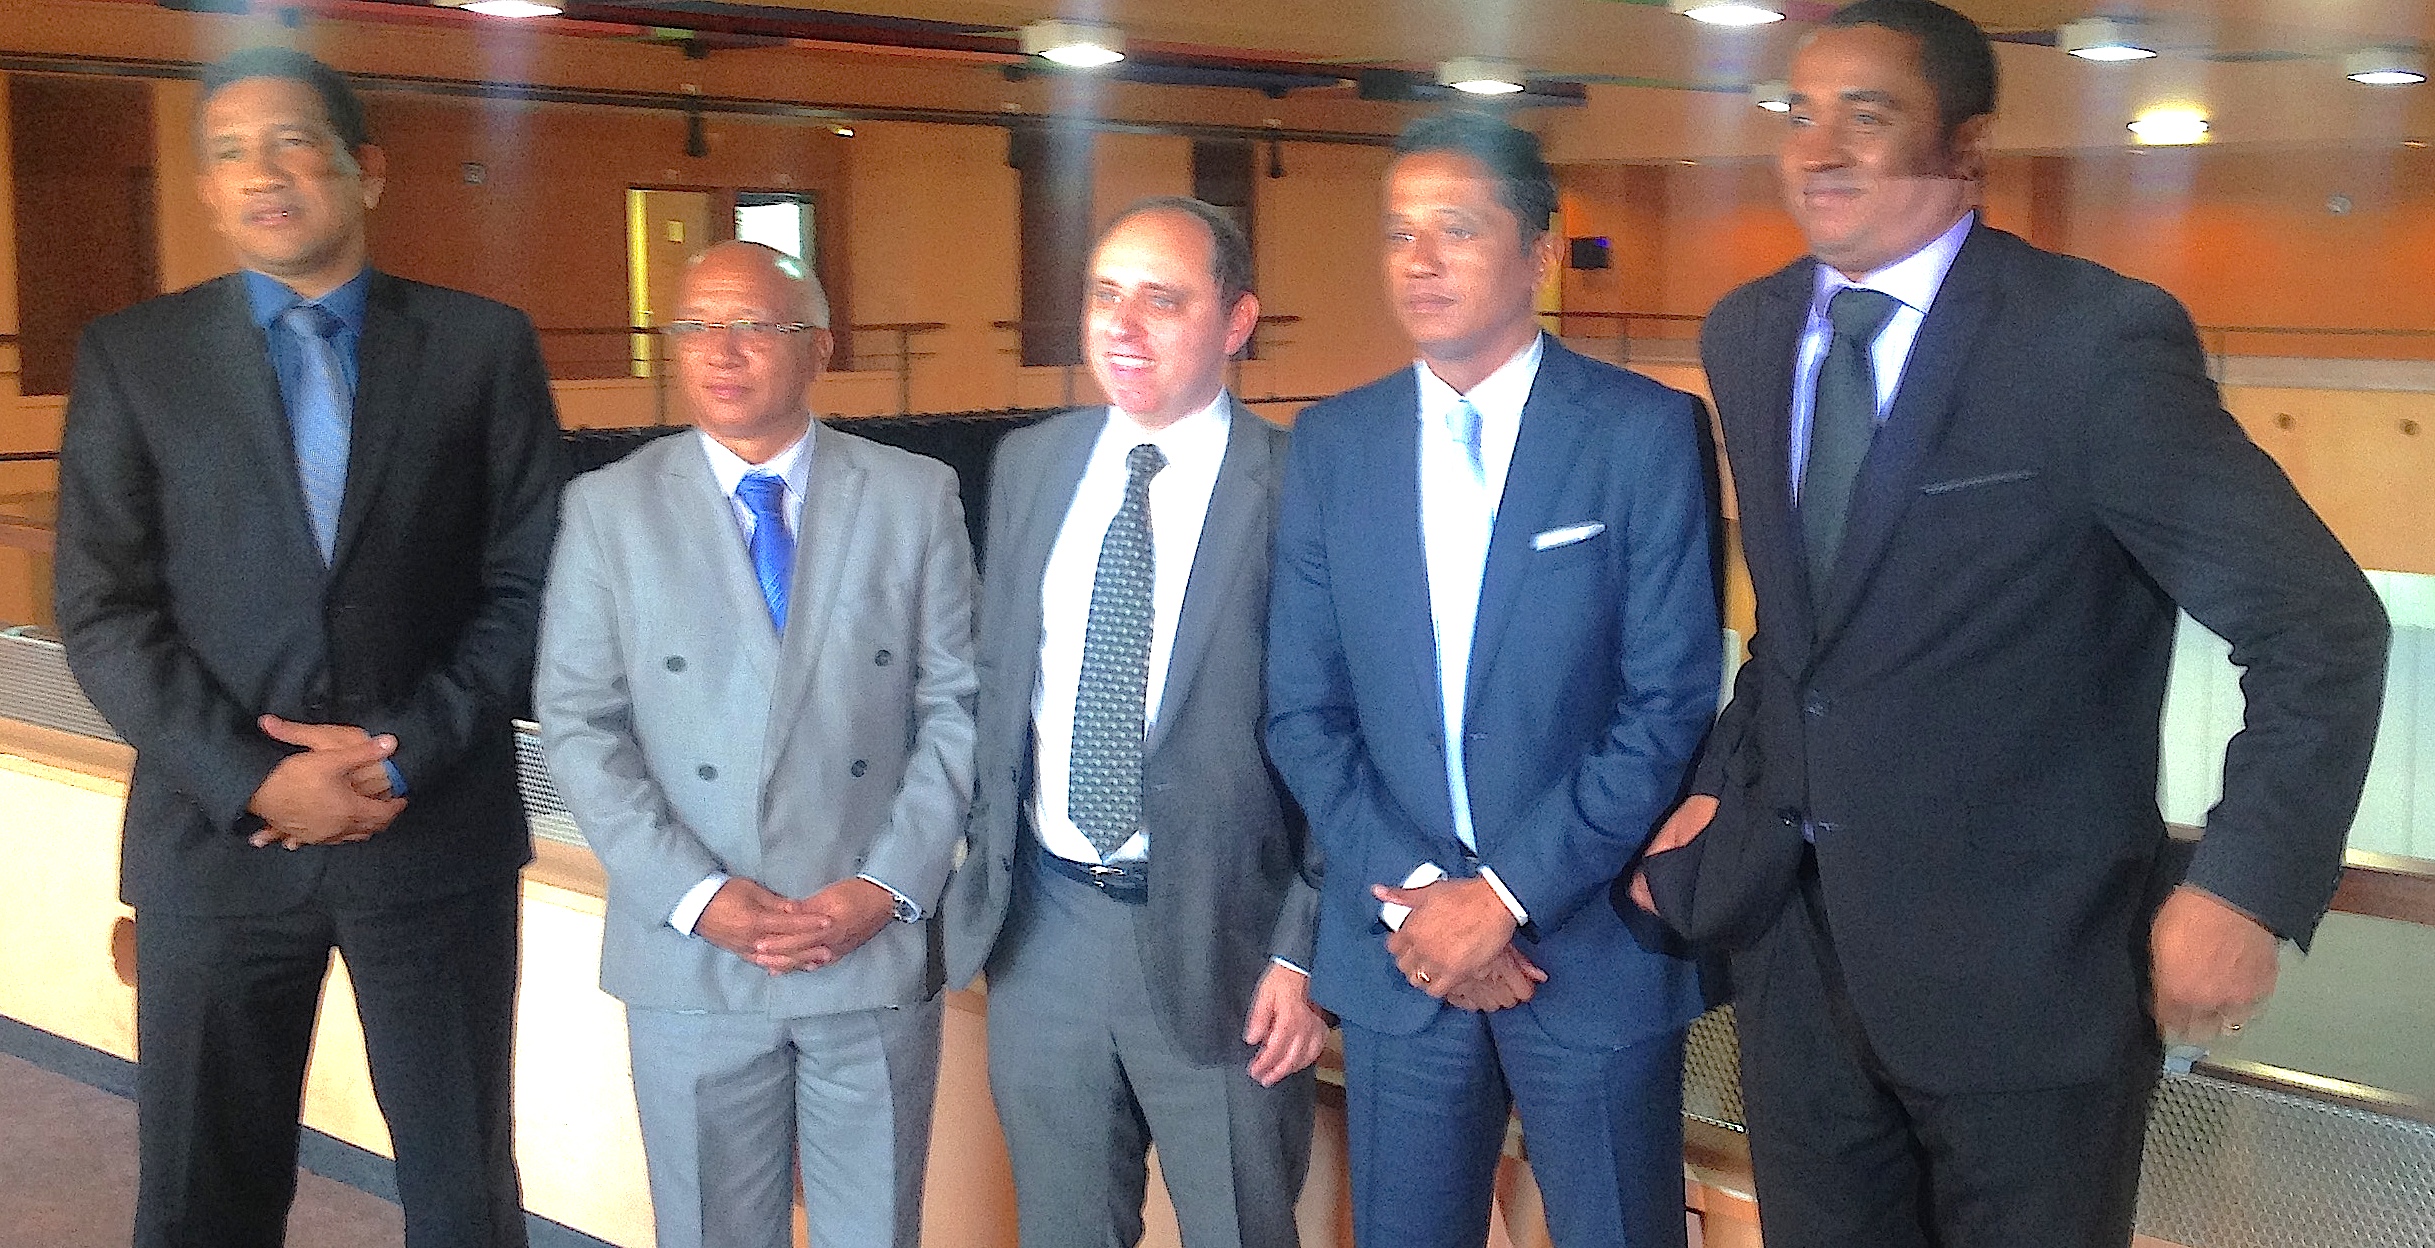 Rencontre économique Corse-Madagascar : La CCI de Corse-du-Sud donne le ton des échanges